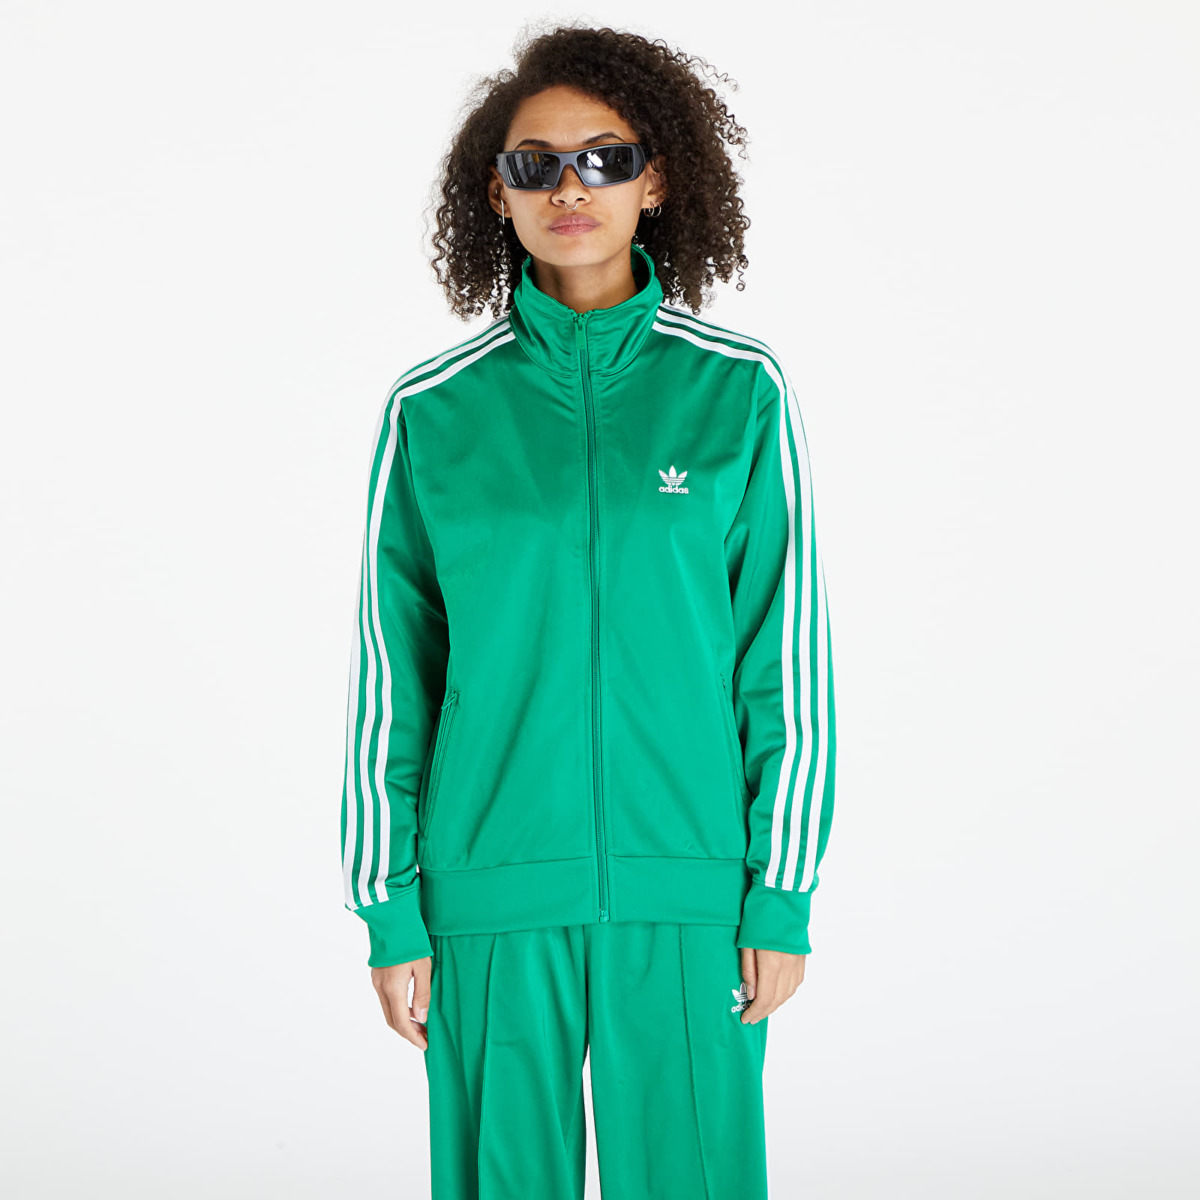 Footshop - Green - Women Jacket - Adidas GOOFASH